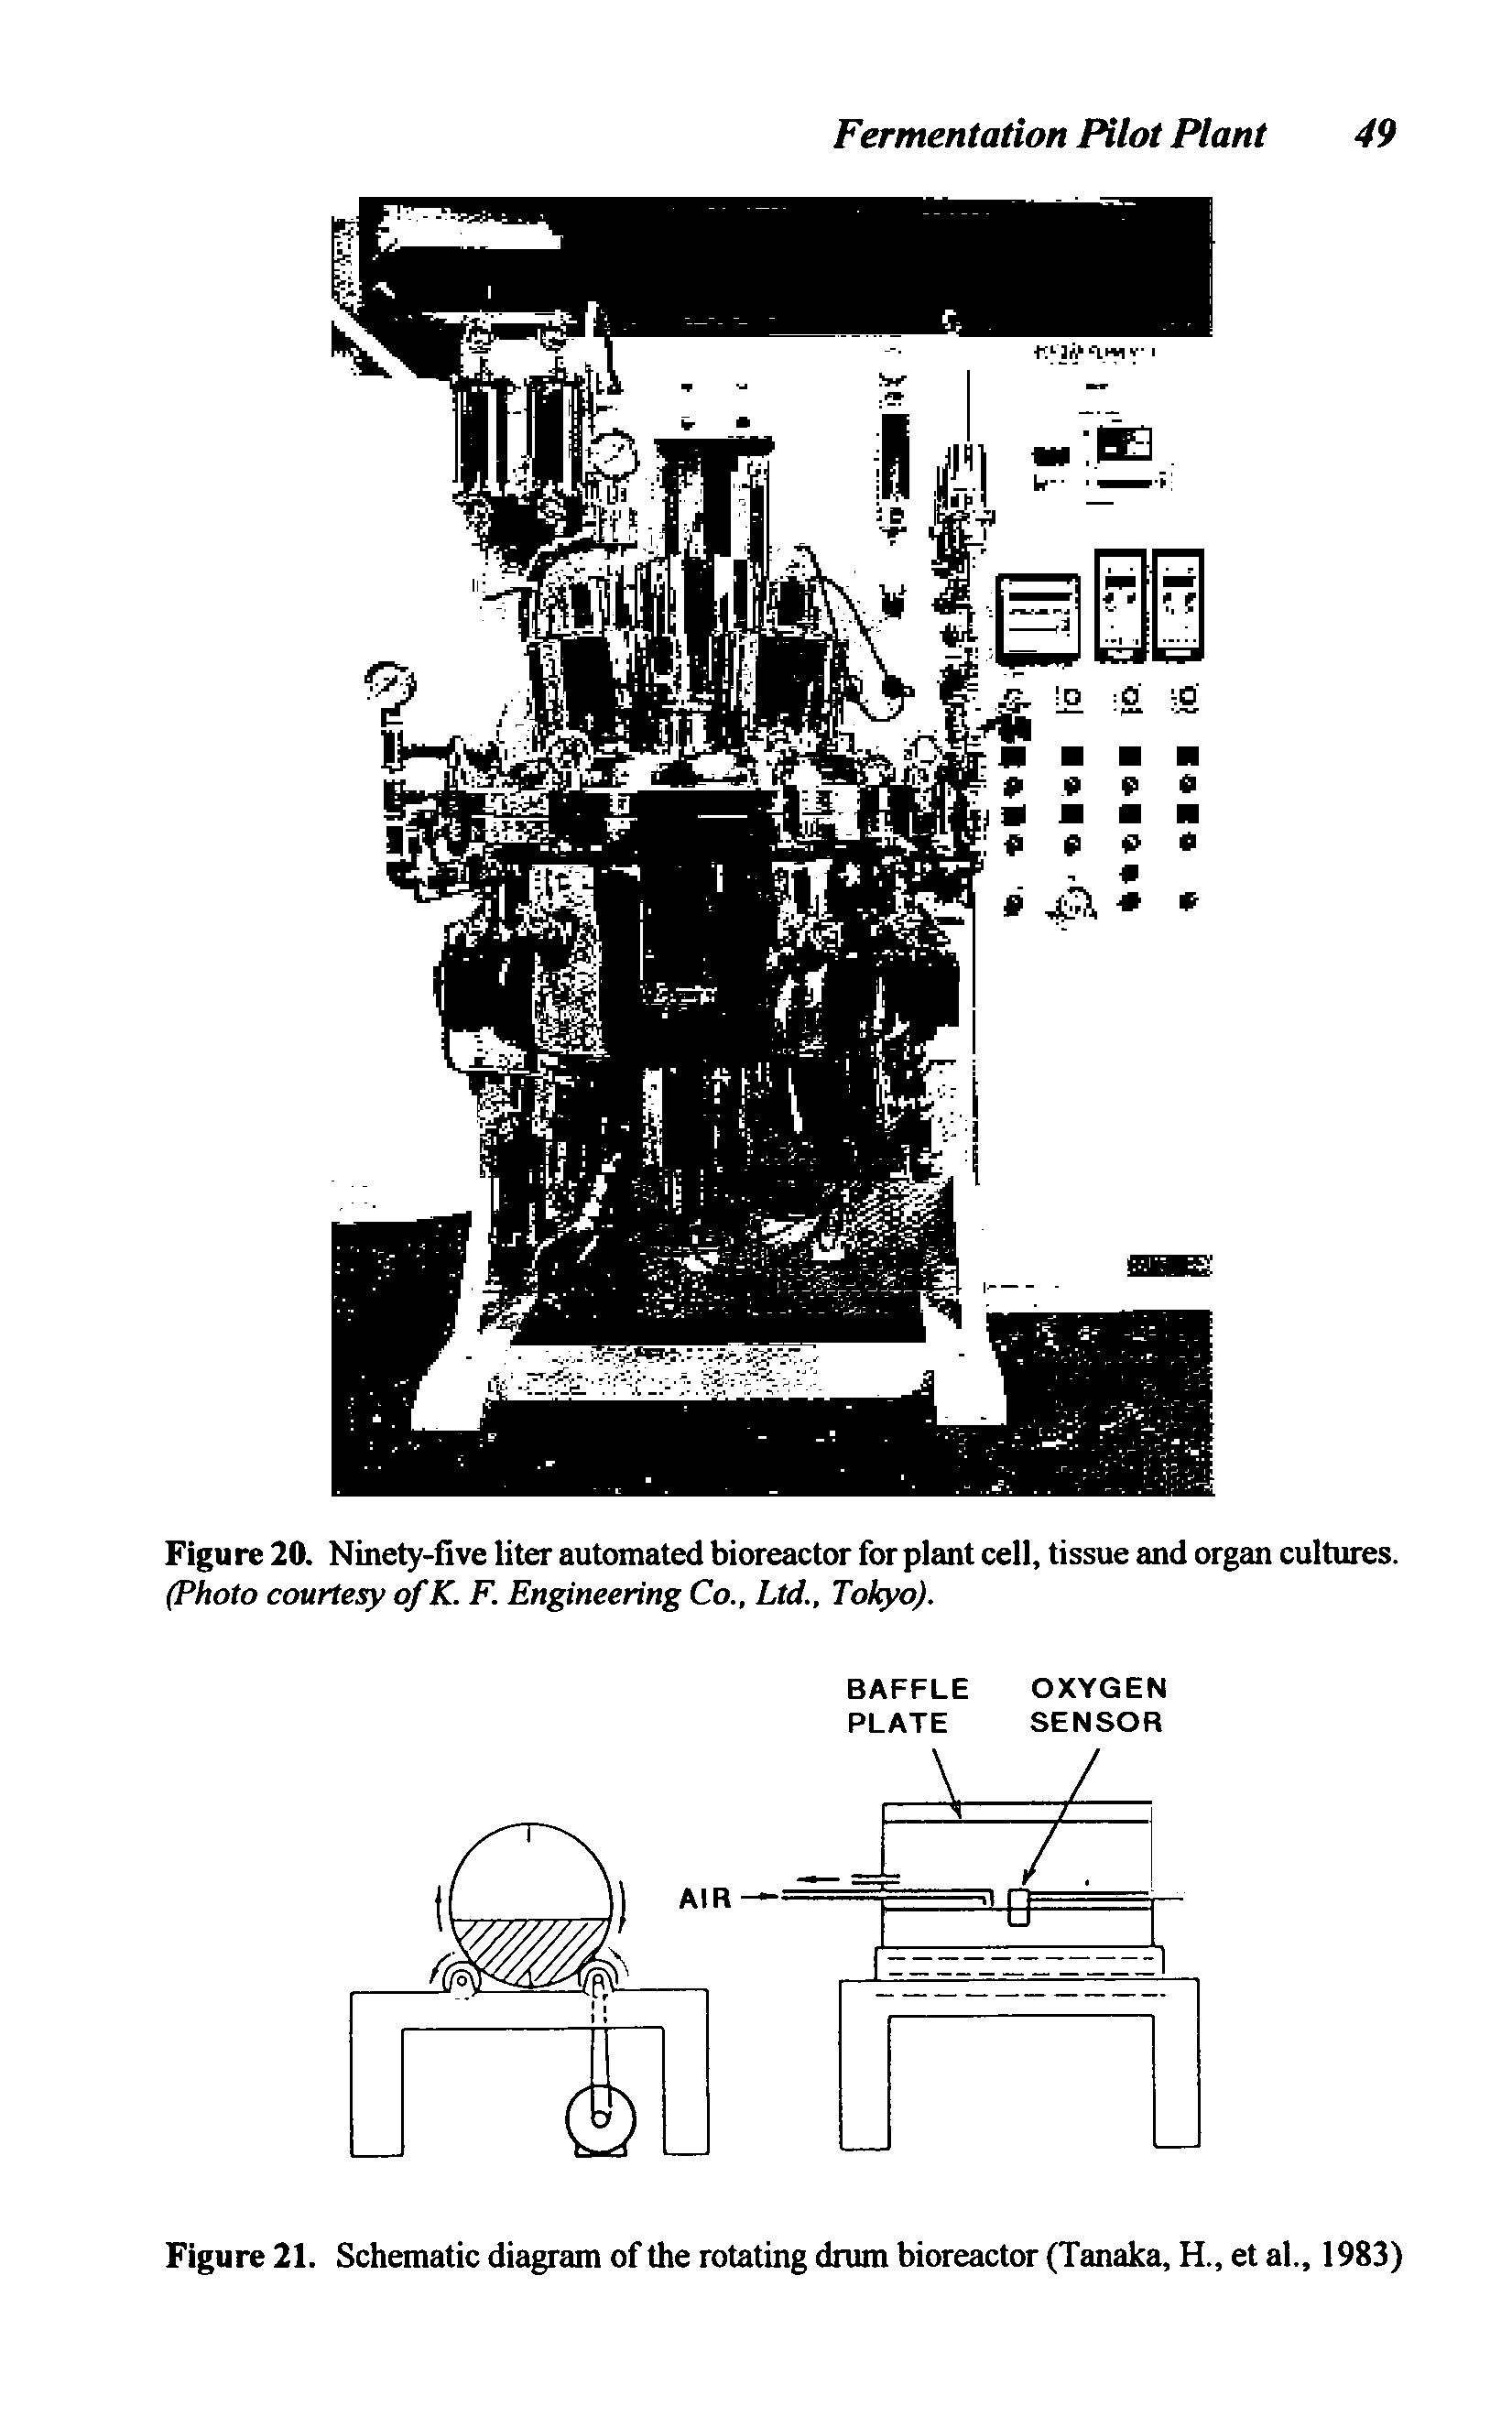 Figure 21. Schematic diagram of the rotating drum bioreactor (Tanaka, H., et al., 1983)...